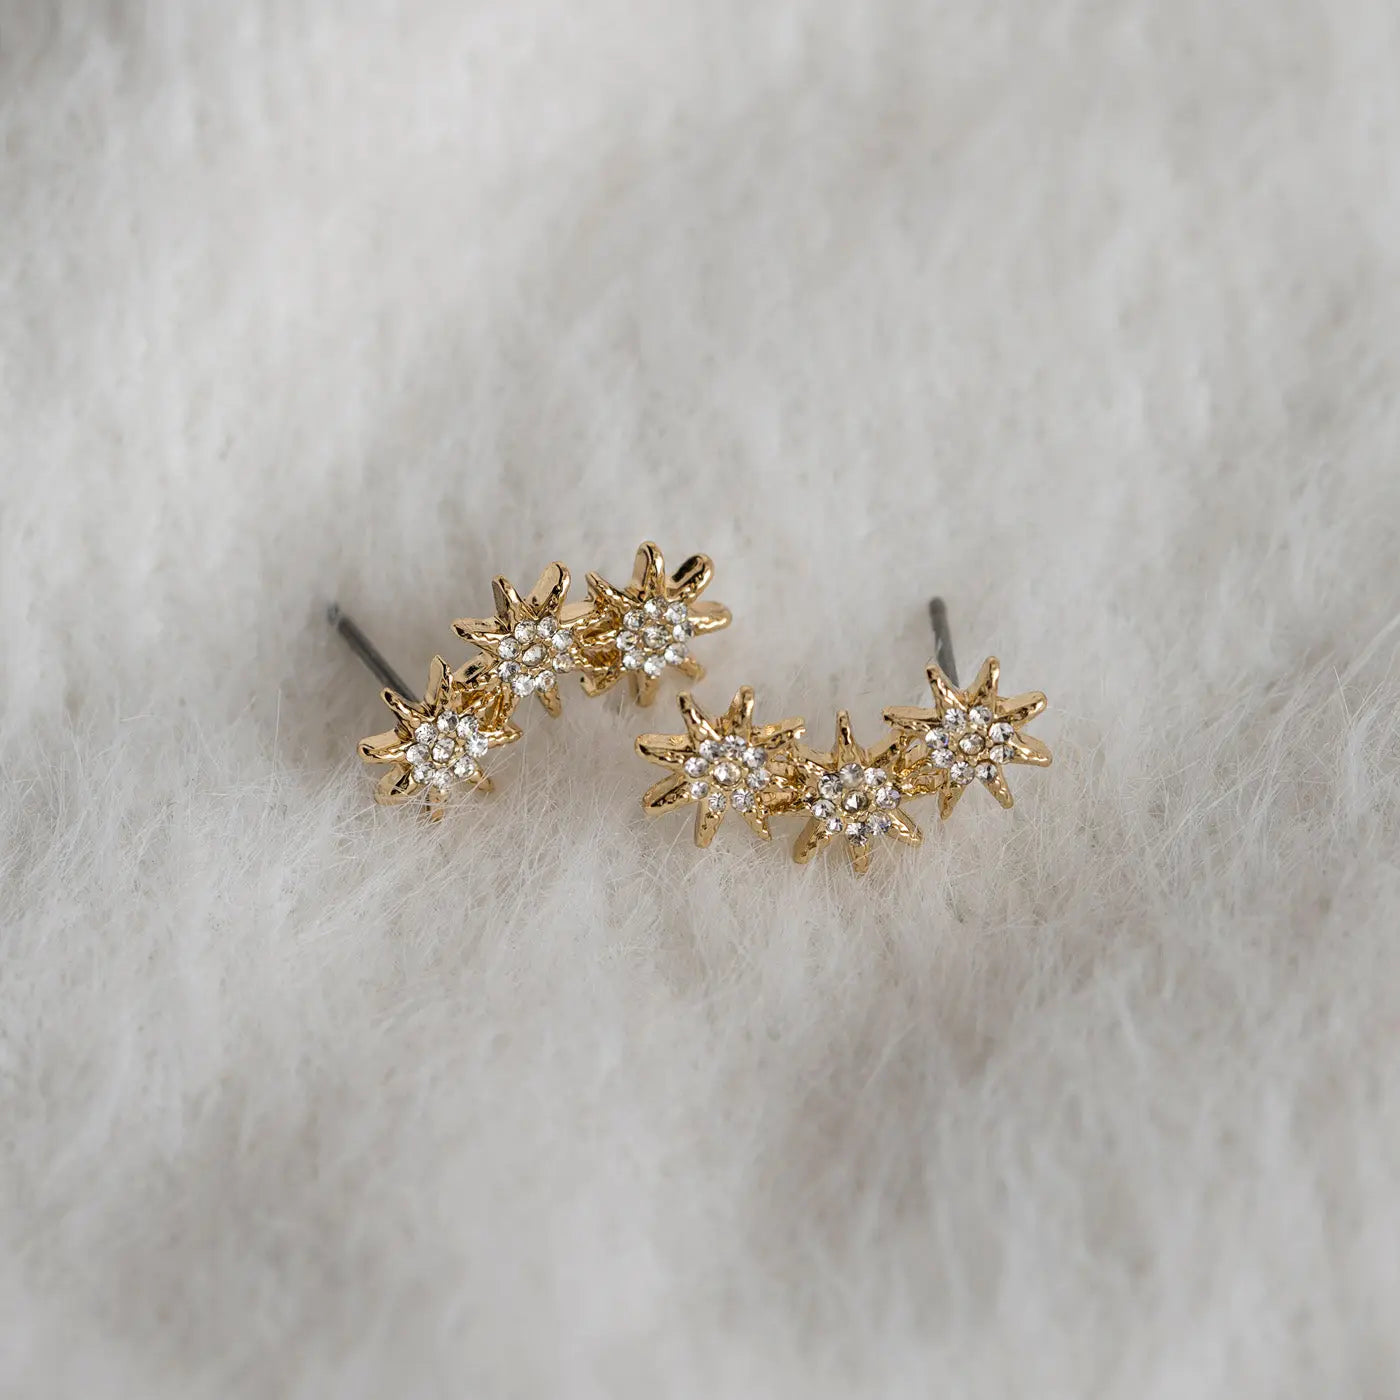 Three crystal stars stud earrings